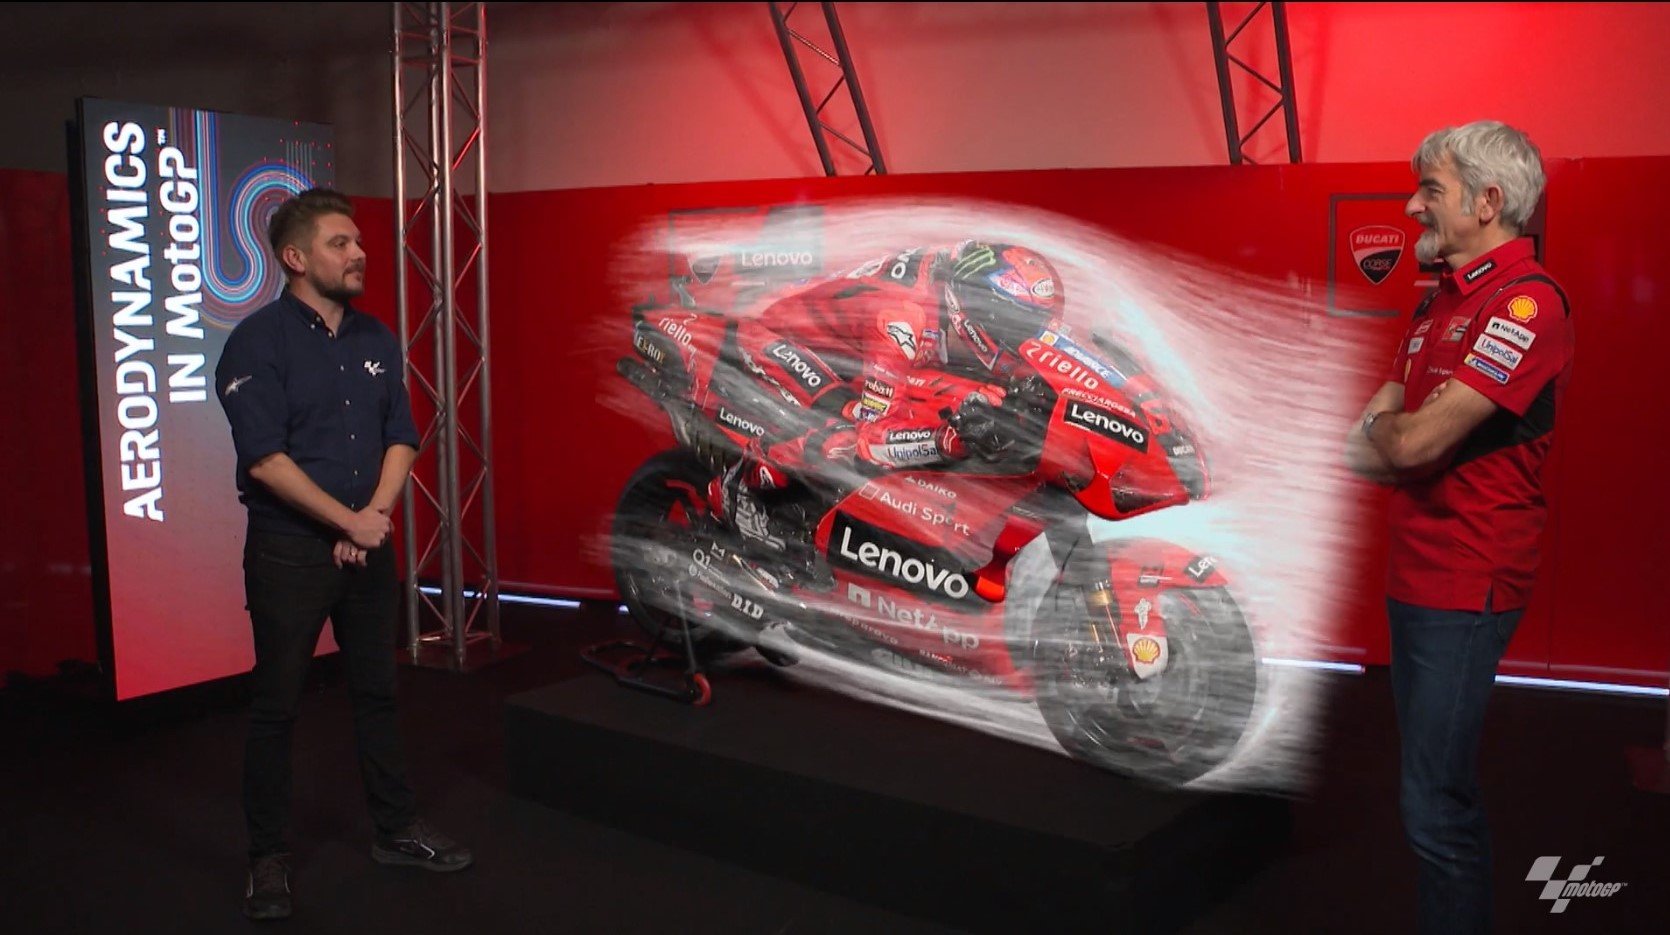 MotoGP : quelle différence entre aileron et aéro-carénage ?